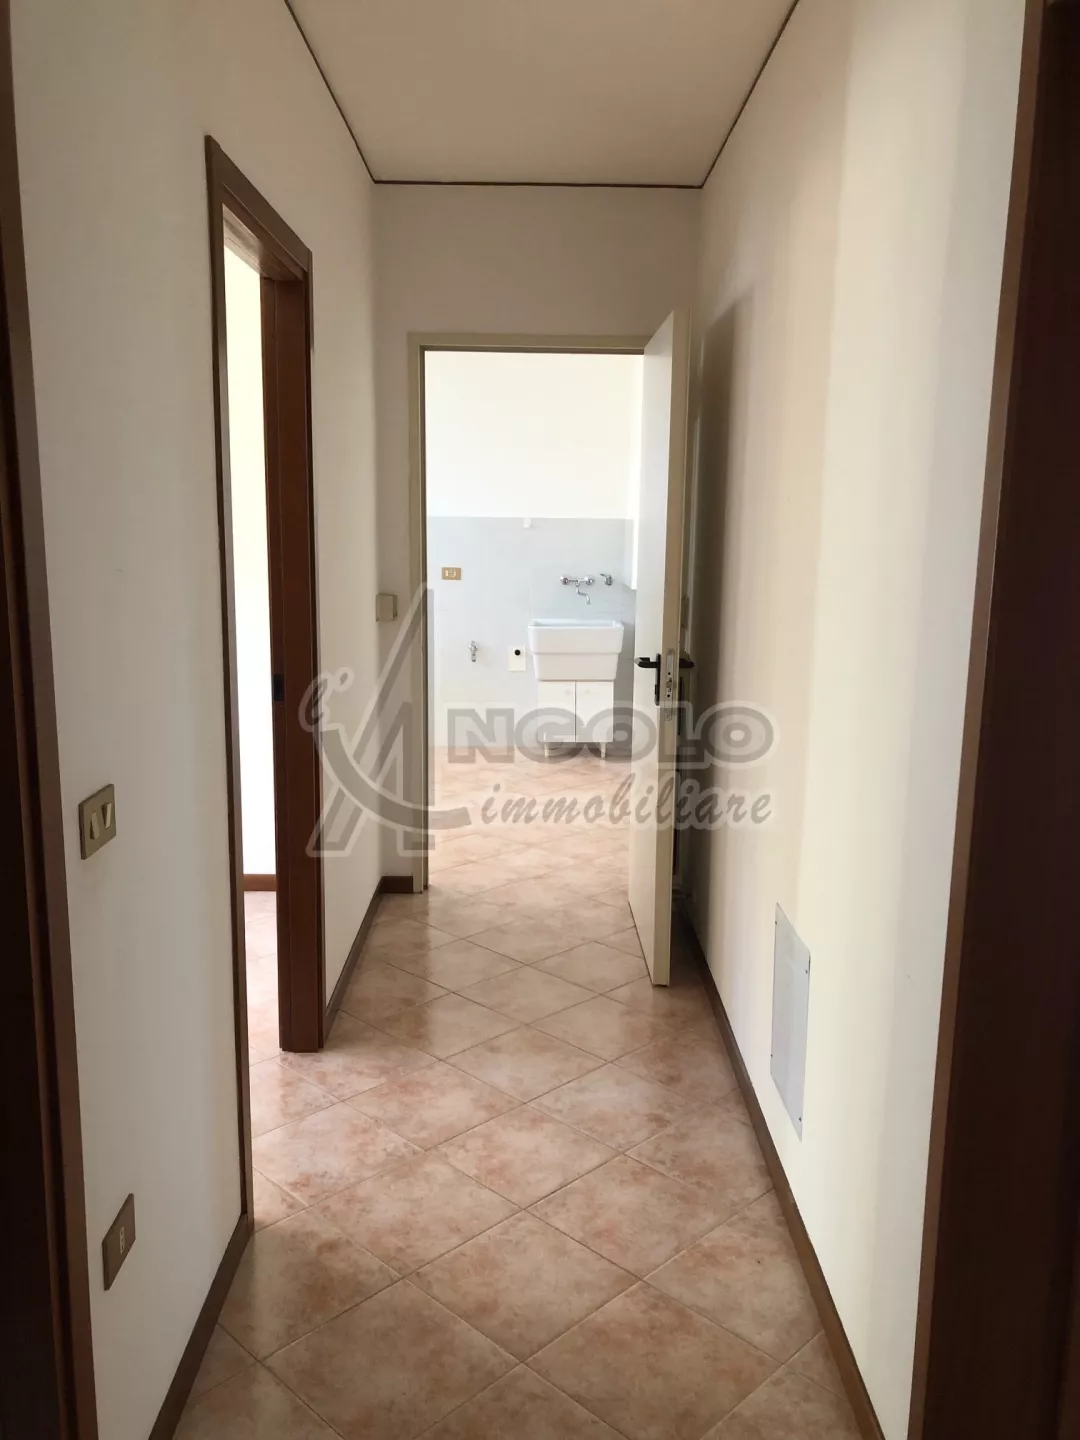 Immagine per Appartamento in affitto a Stienta viale Antonio Ligabue 2